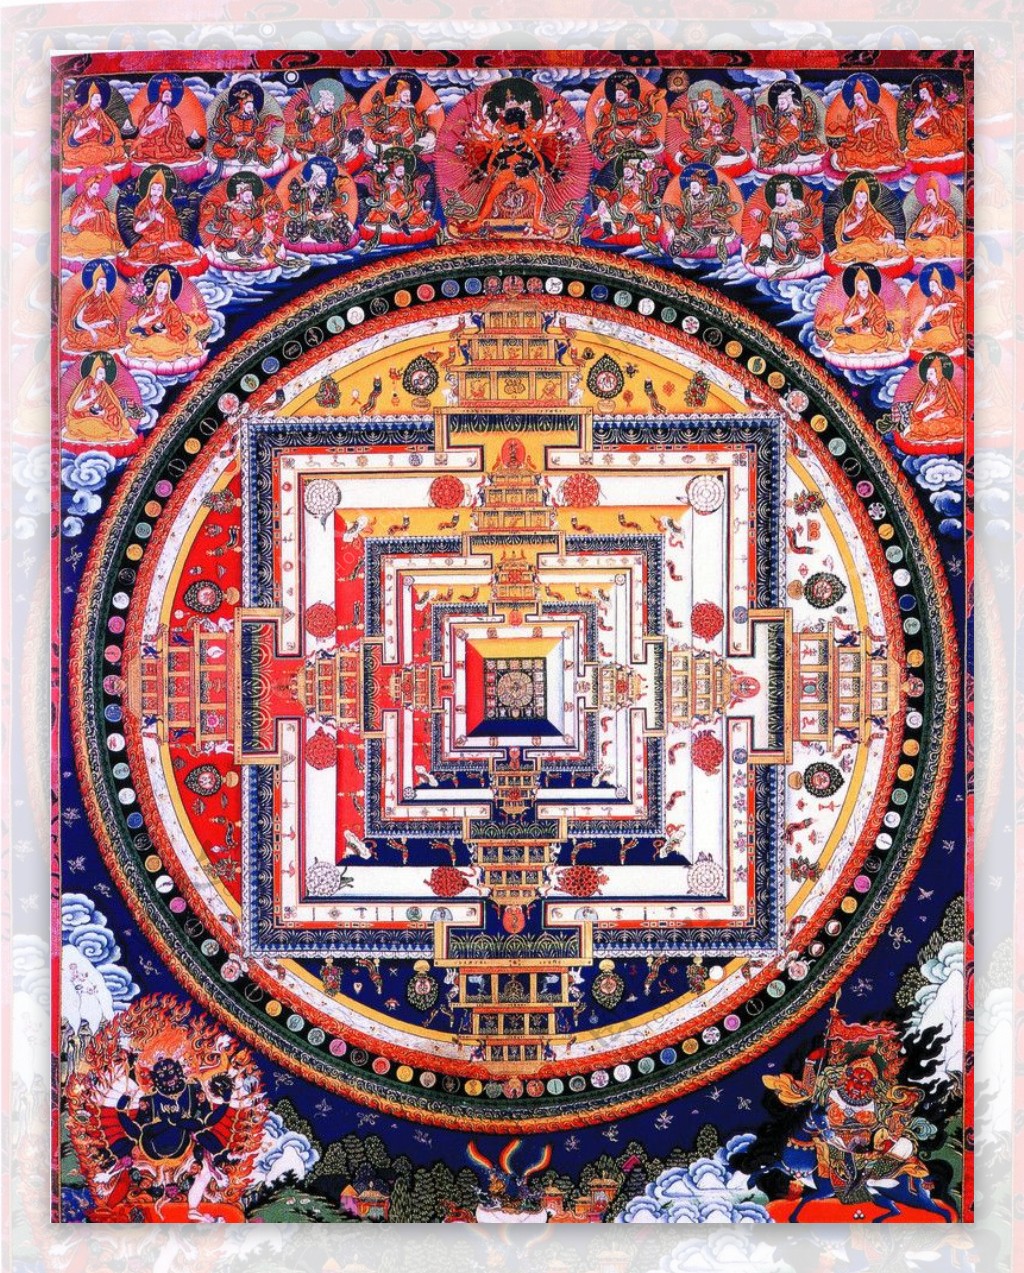 西藏日喀则唐卡佛教佛法佛经佛龛唐卡全大藏族文化15图片